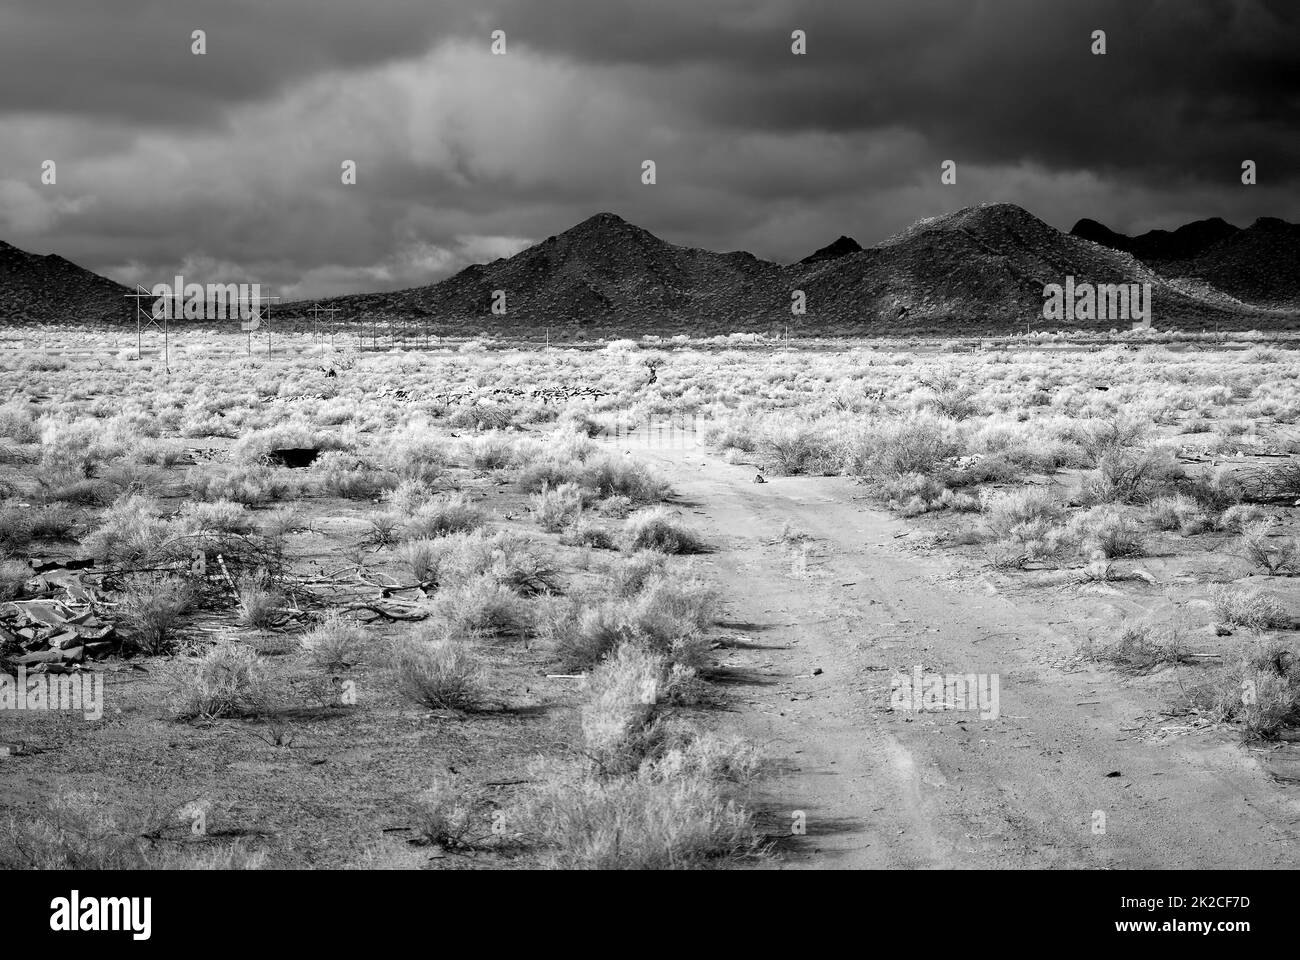 Infrarot Sonora Desert Arizona Dirt Road Stockfoto